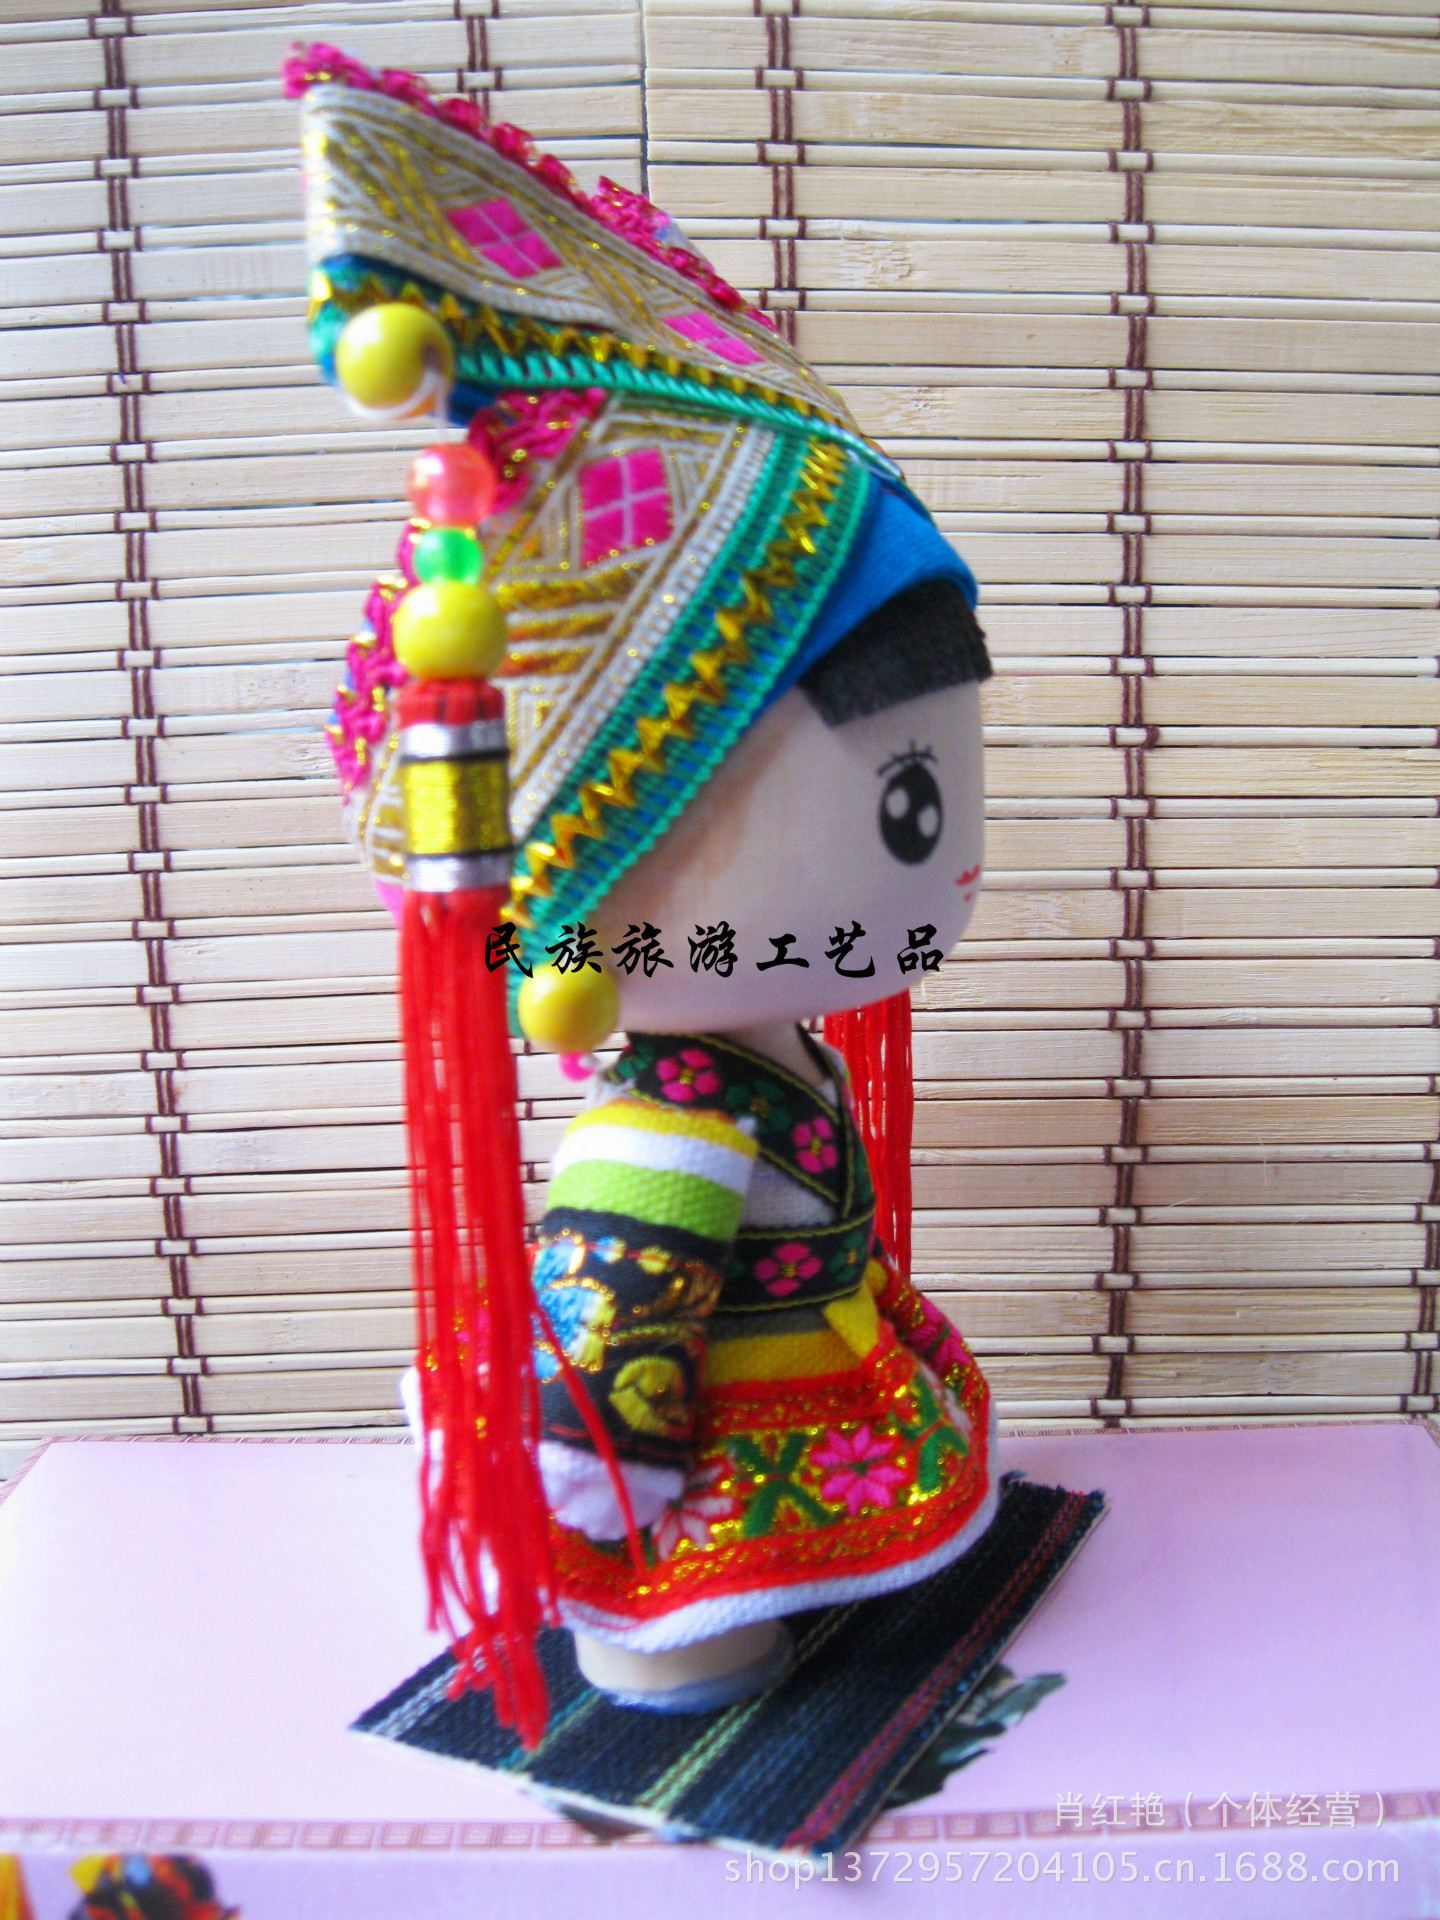 竹质工艺品 厂家直销少数民族娃娃 木偶布娃 卡通娃 旅游纪念品 瑶族